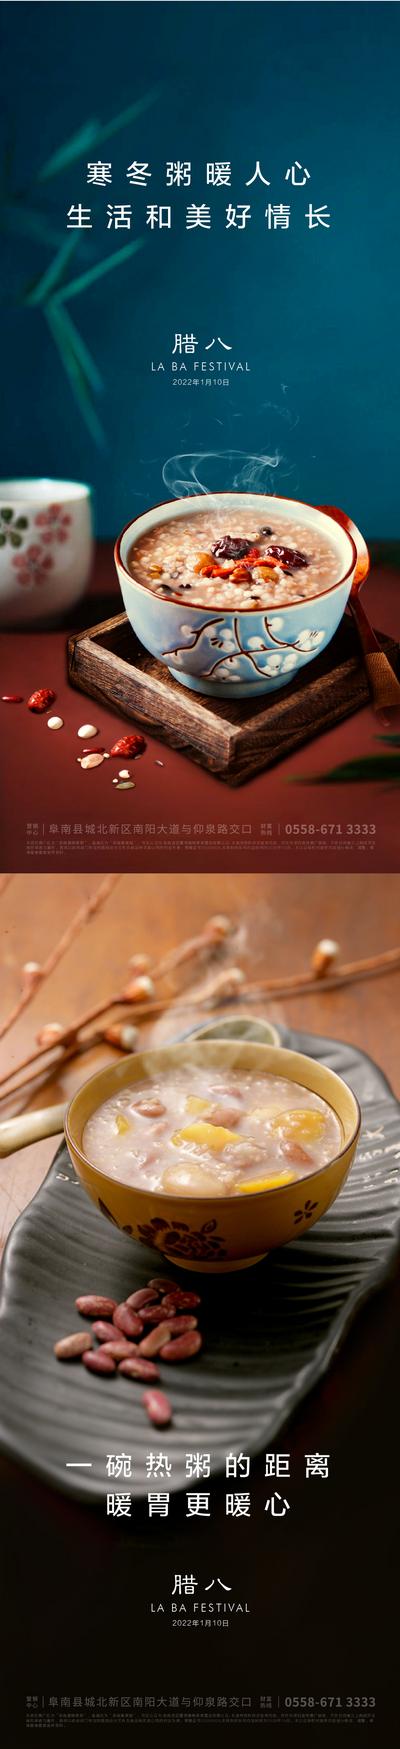 南门网 海报 中国传统节日 房地产 腊八节 腊八粥 八宝粥 中式